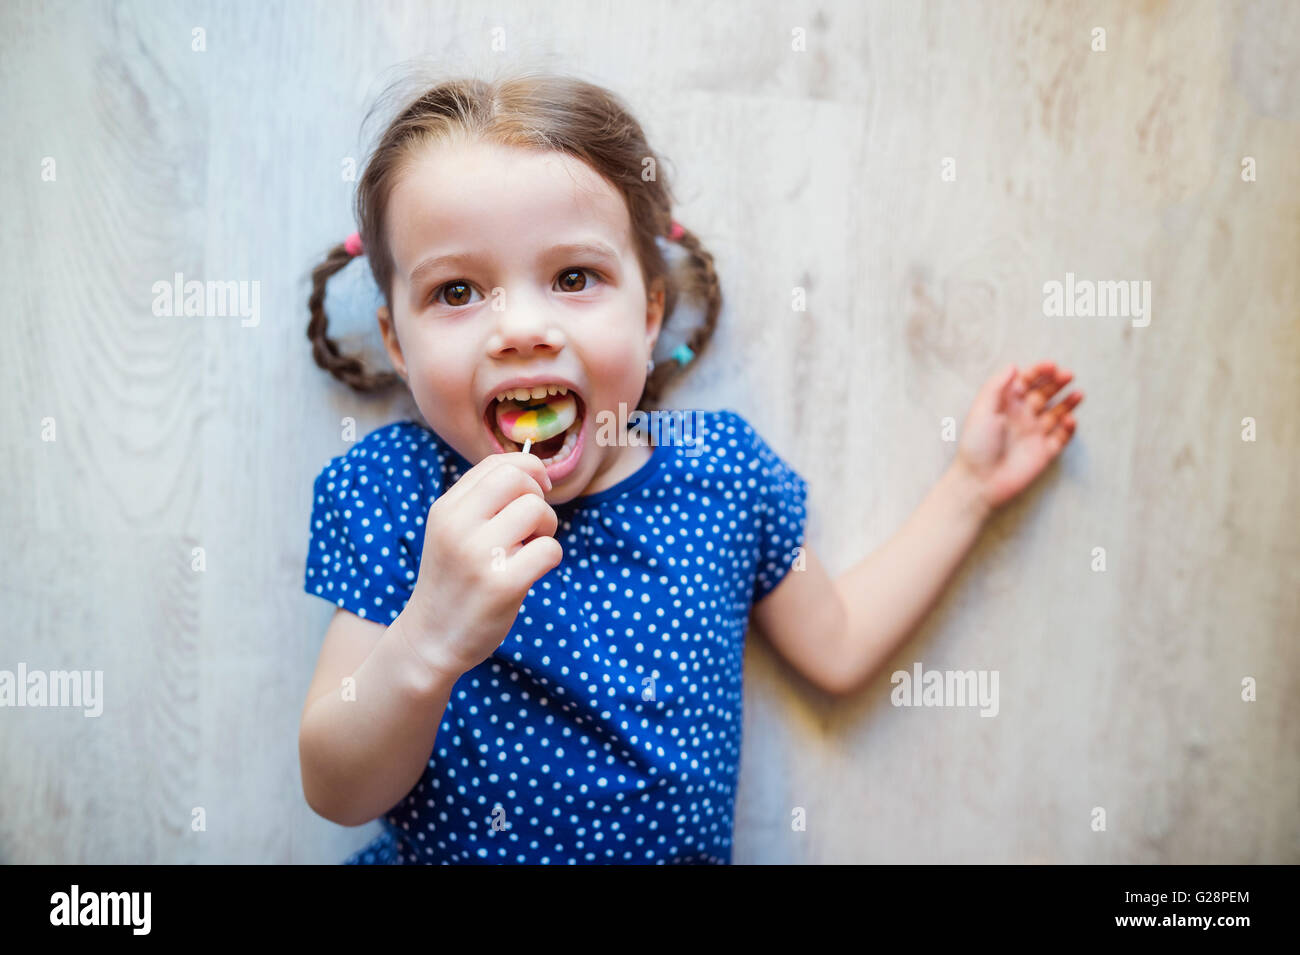 Little girl lying on the floor, smiling, eating lollipop Stock Photo